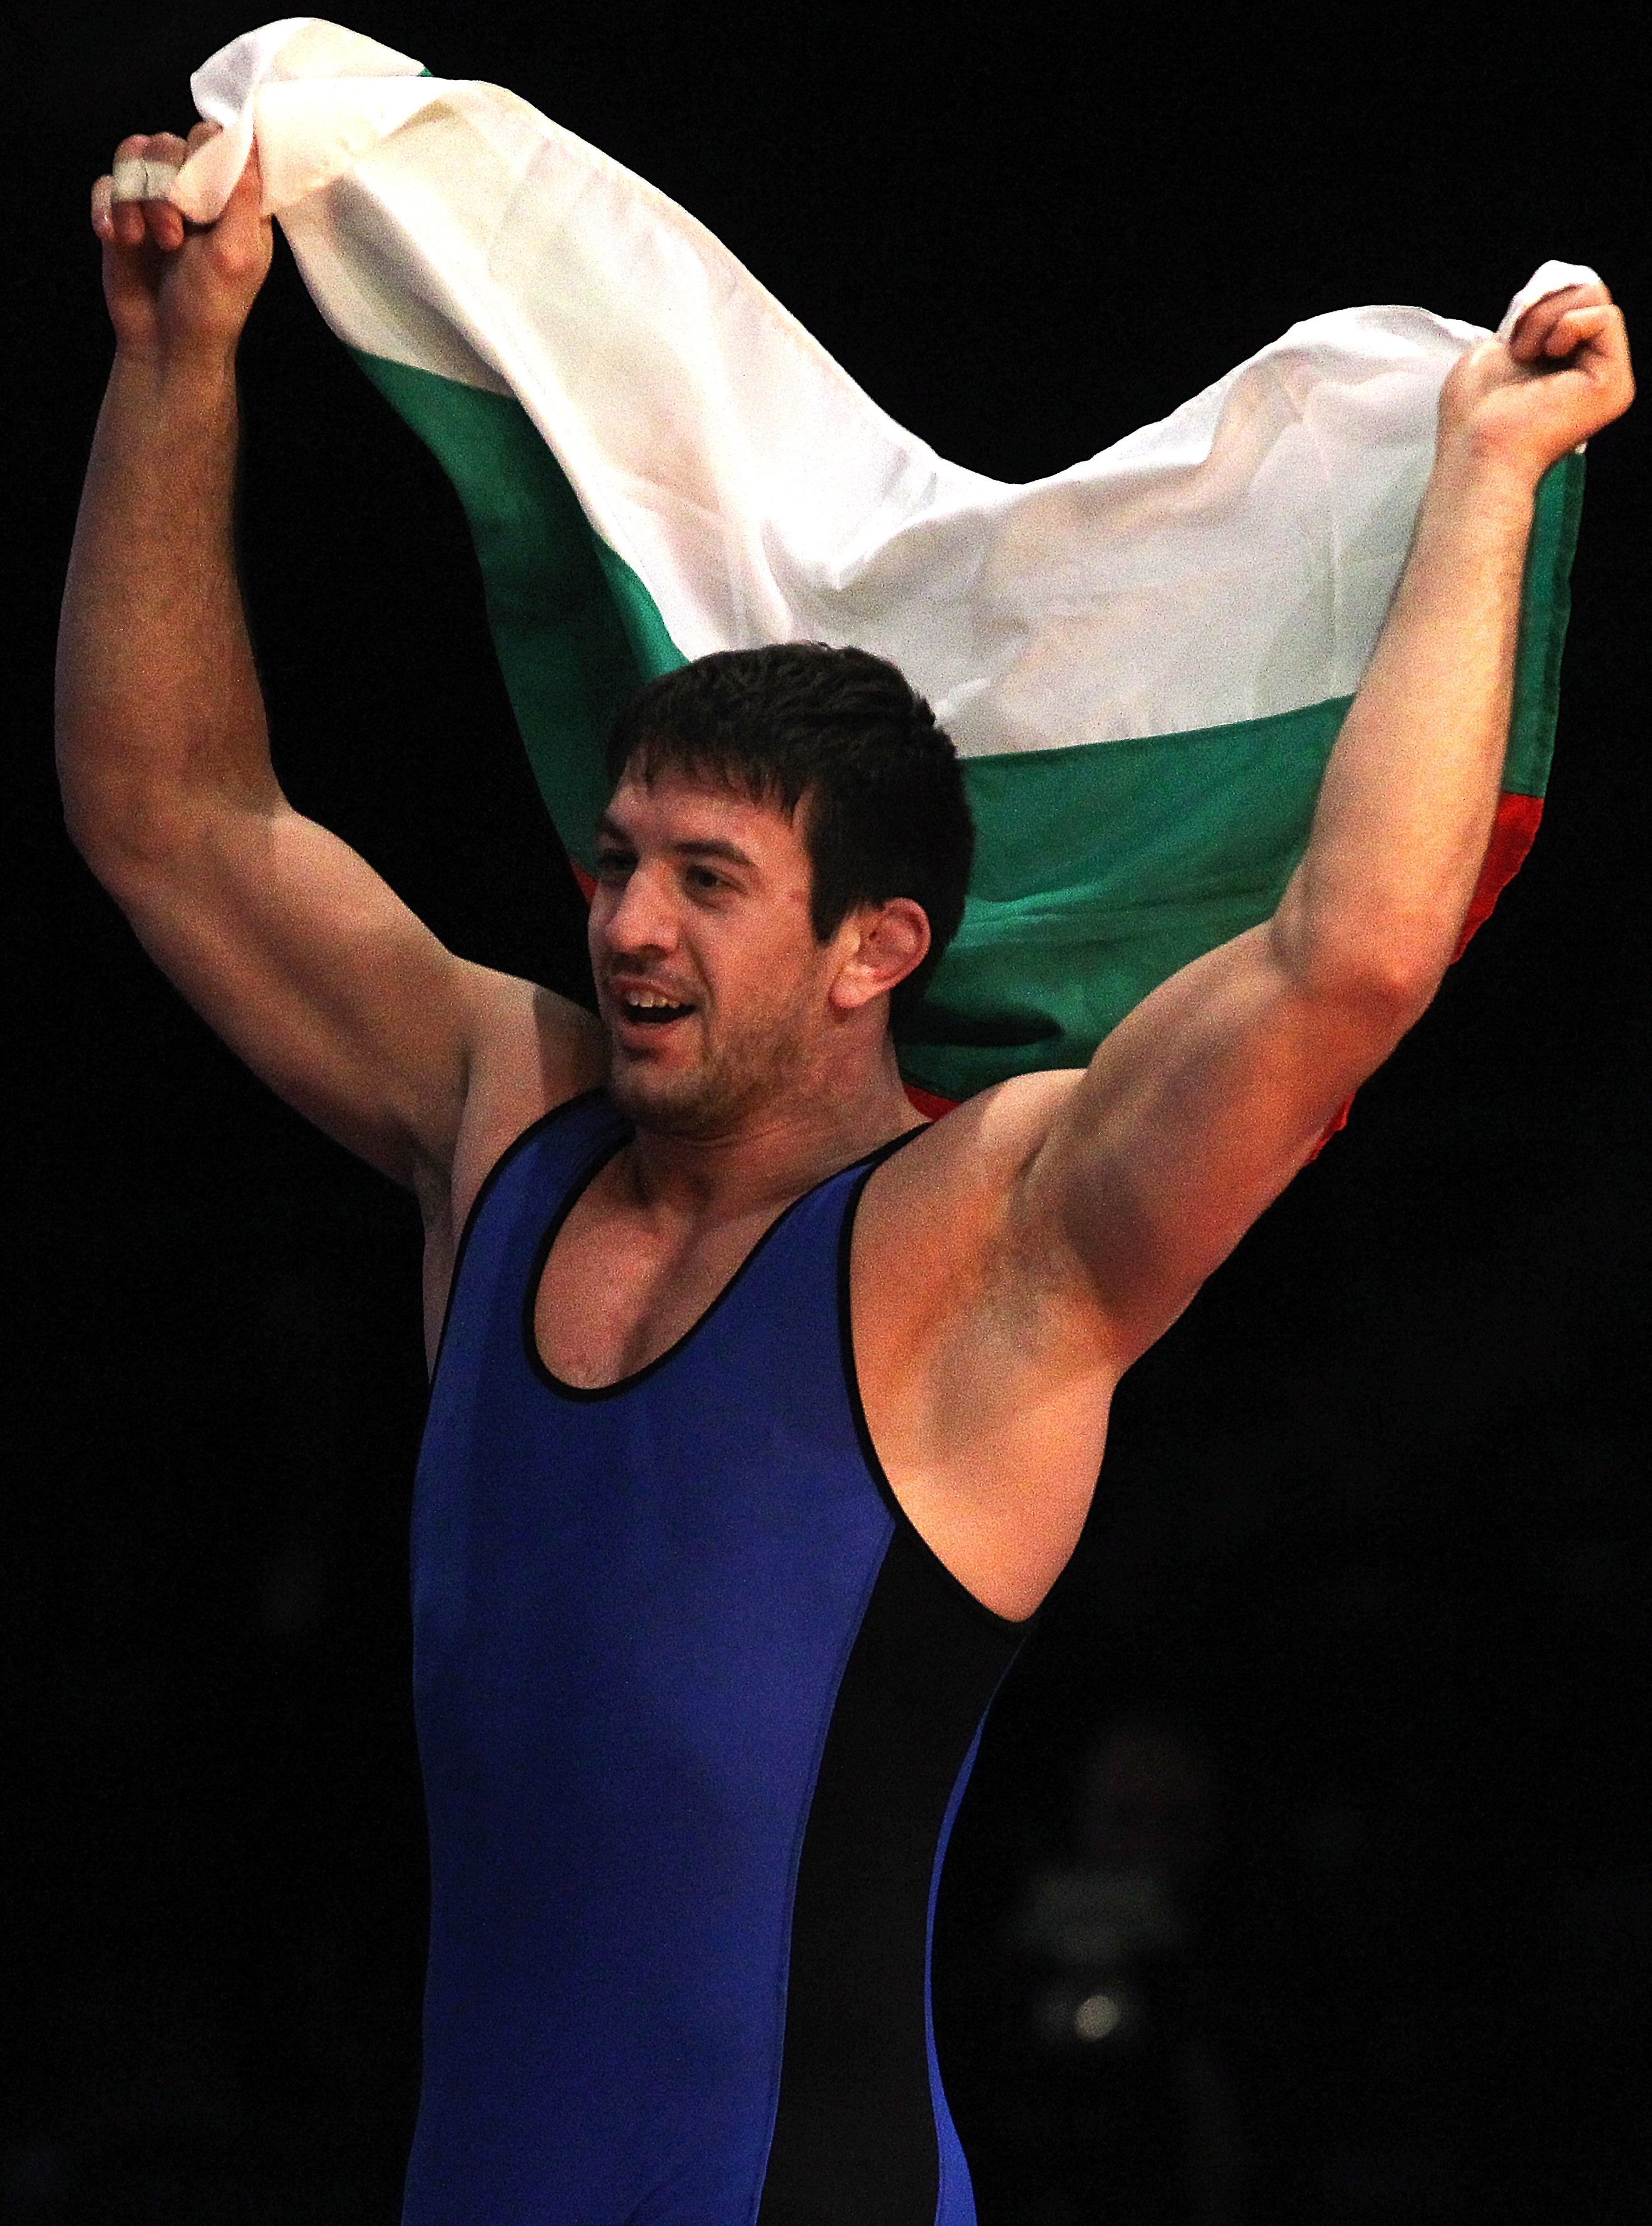 Христо Маринов е европейски шампион по борба